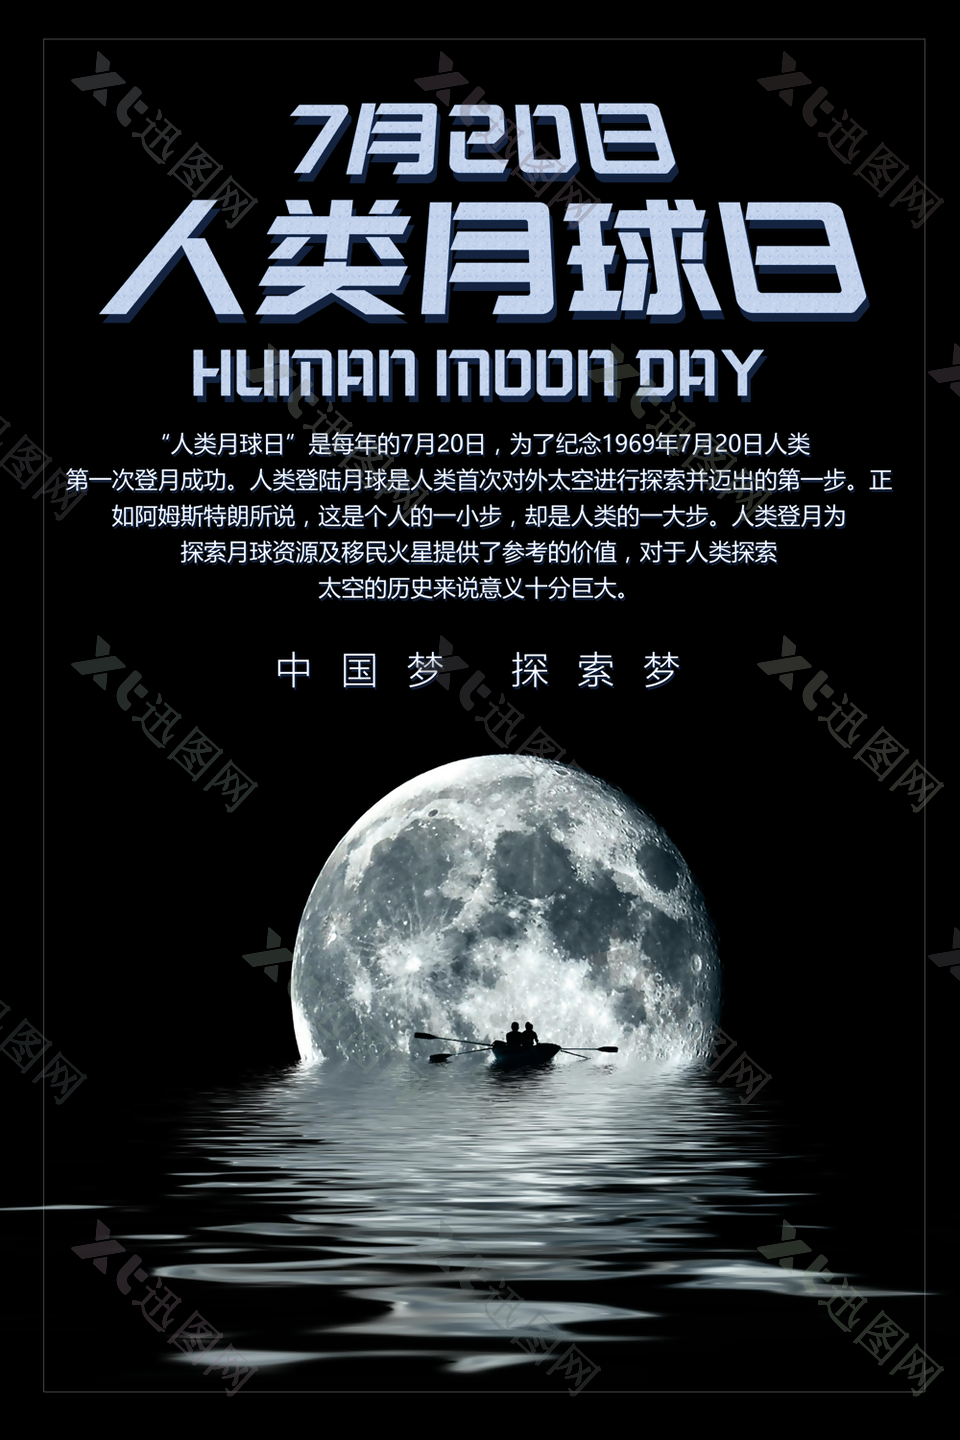 神秘黑色大气人类月球日海报素材设计